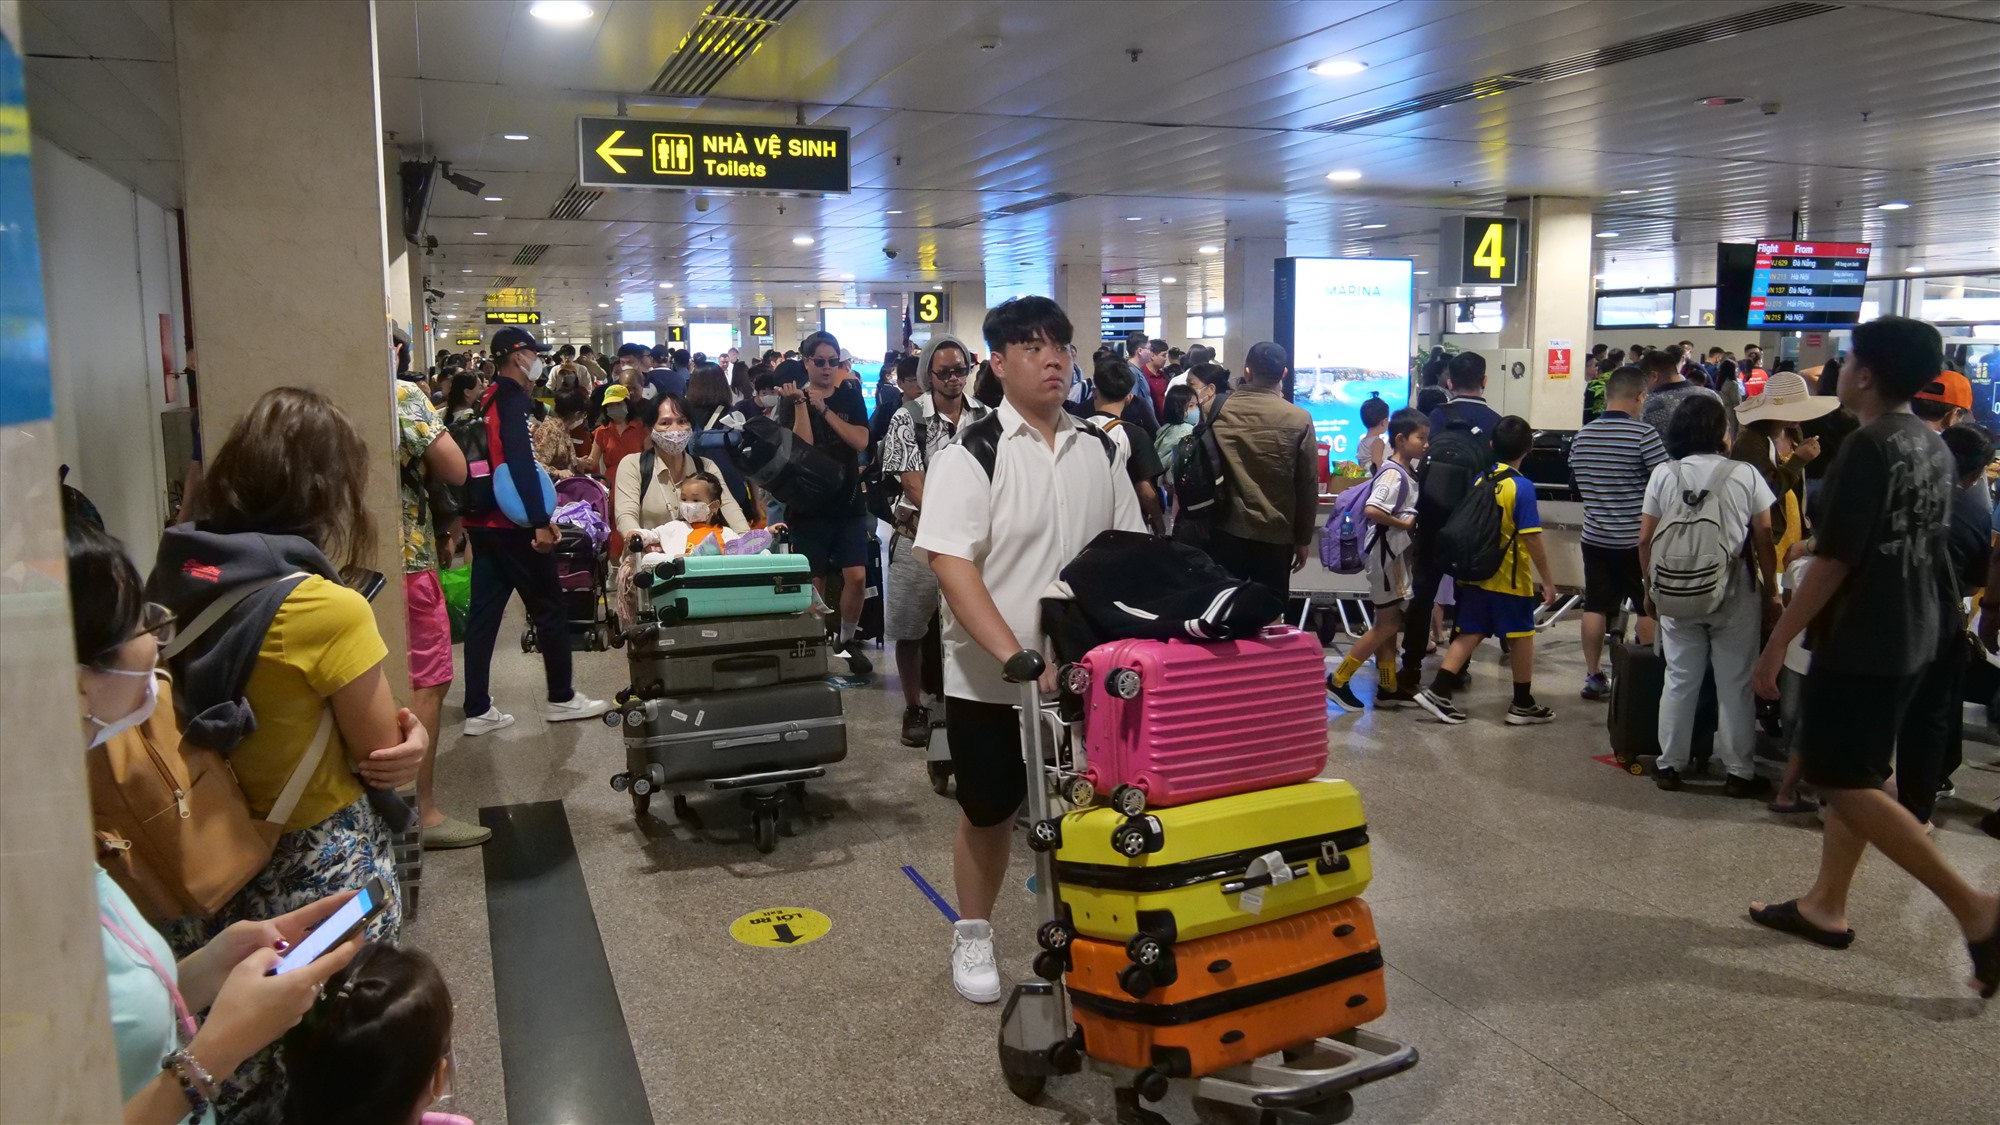 Hôm nay ngày 4.9 cũng là ngày cao điểm đến ở sân bay Tân Sơn Nhất với khoảng 740 chuyến bay, hành khách dự kiến khoảng 130.000 người. Theo ghi nhận của PV, vào khoảng 17h chiều nay tại khu vực ga đến quốc nội ở sân bay Tân Sơn Nhất (quận Tân Bình, TPCHM), nhiều hành khách đang tất bật sửa soạn hành lí, nối nhau rời sân bay sau kì nghỉ lễ dài ngày.